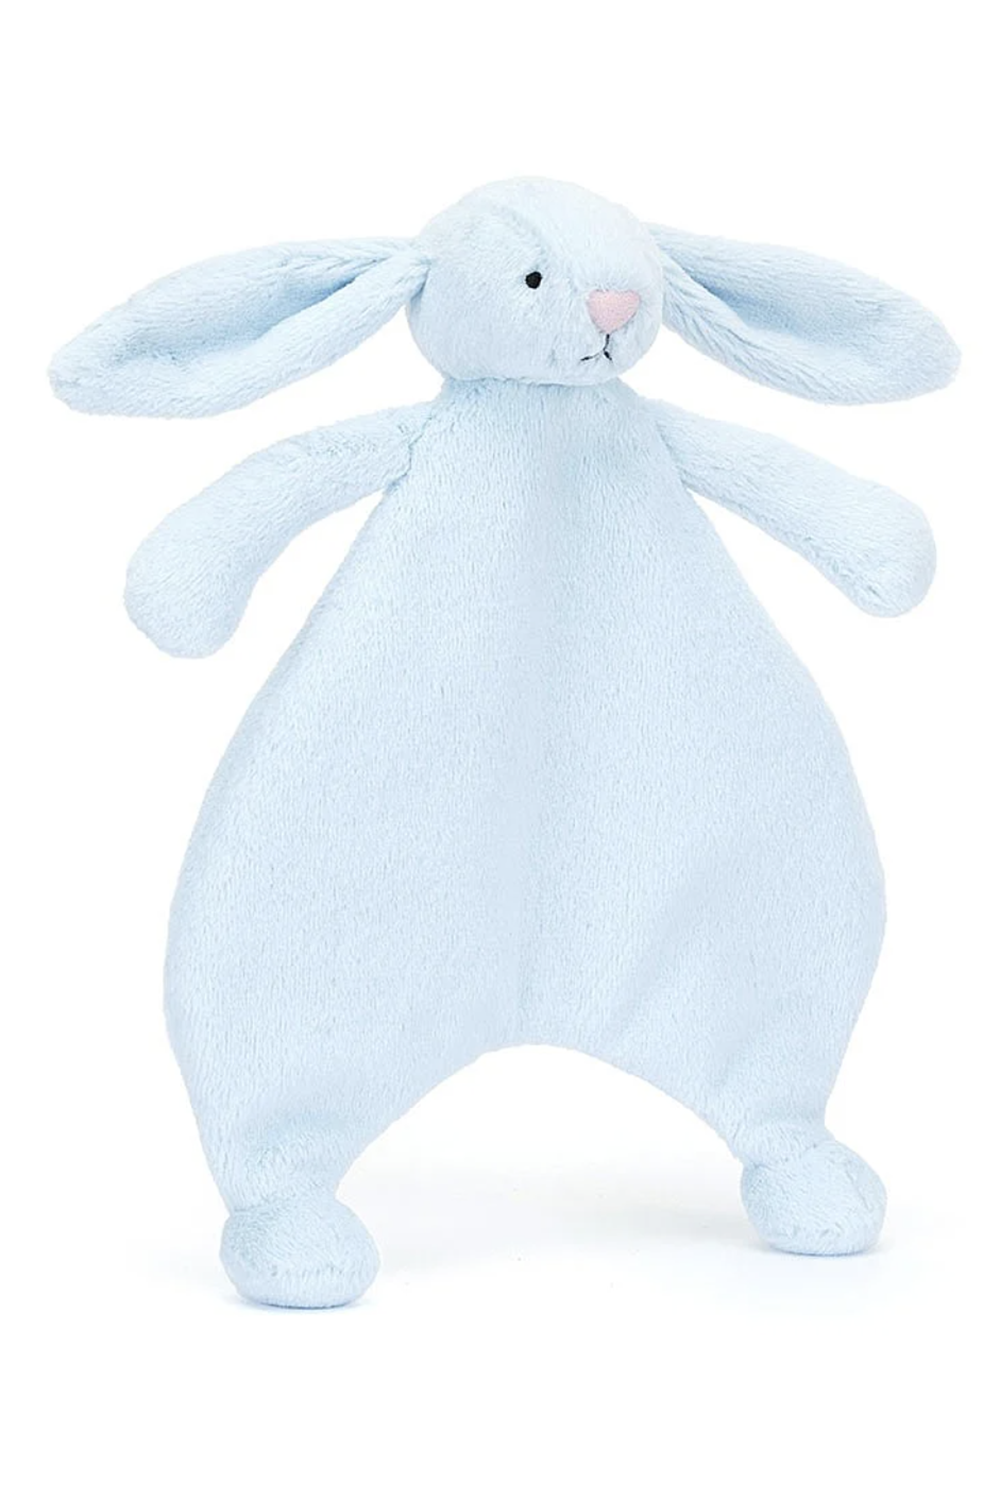 JELLYCAT Bashful Comforter - Blue Bunny